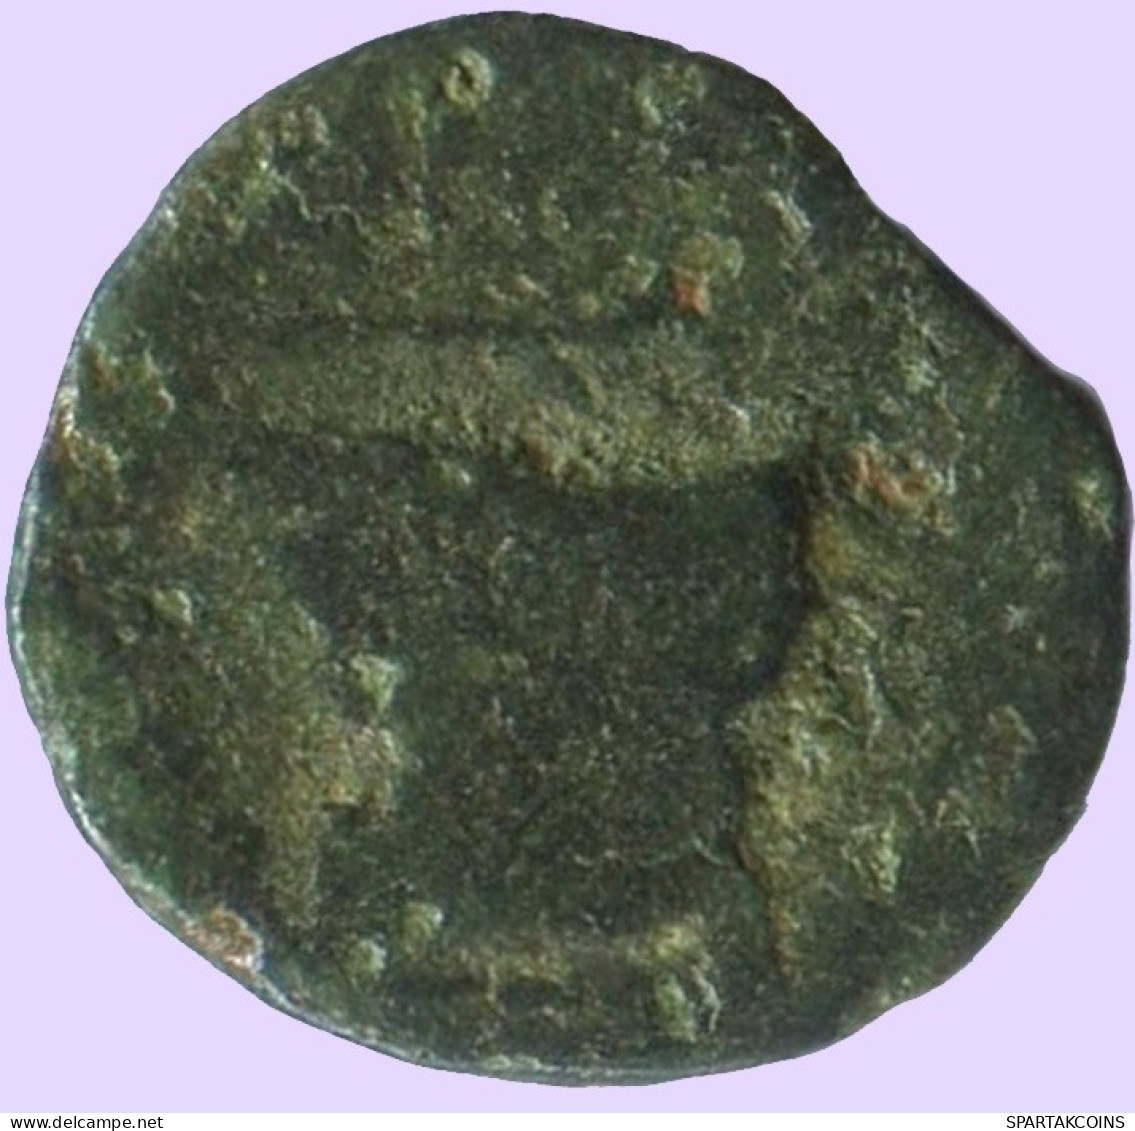 Antiguo Auténtico Original GRIEGO Moneda 0.4g/8mm #ANT1716.10.E.A - Greek